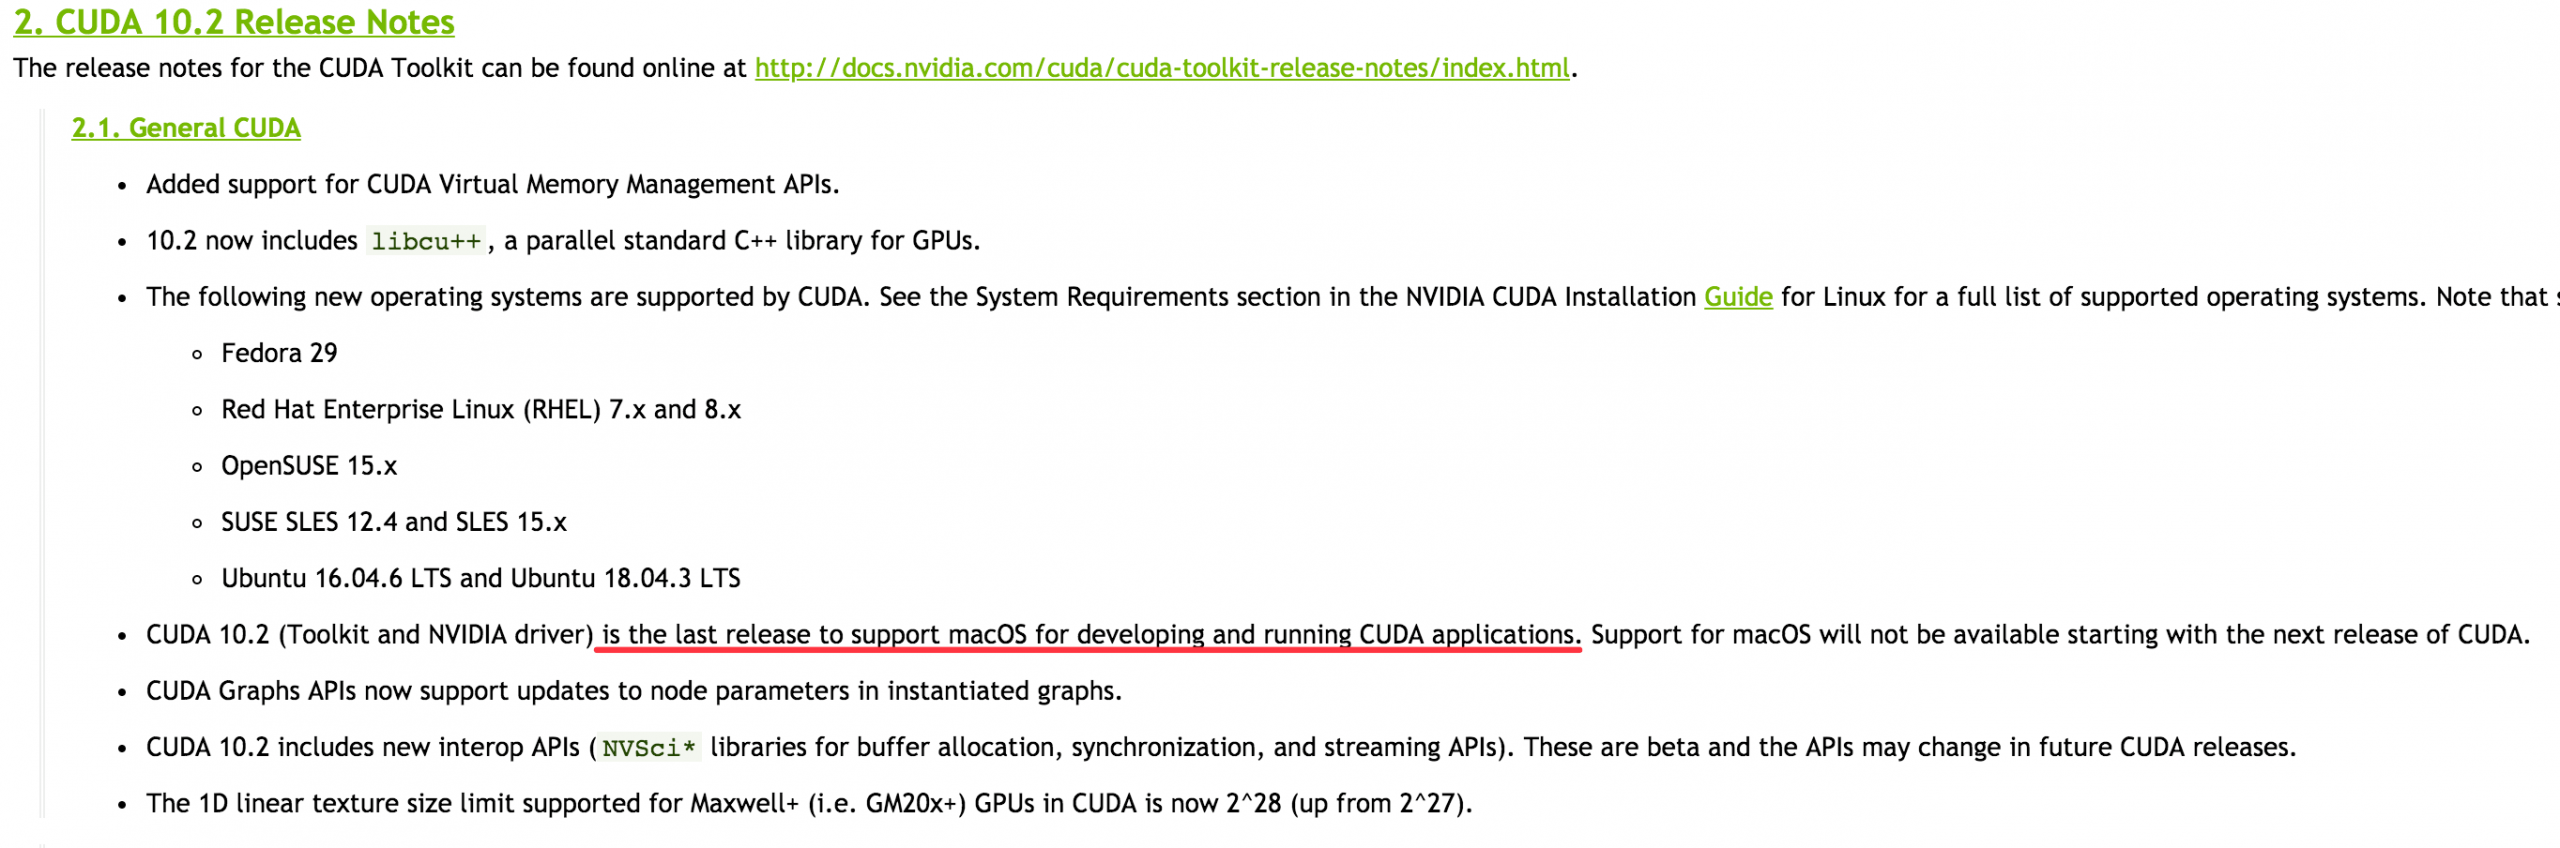 英伟达将在未来放弃macOS平台上CUDA的支持，苹果和英伟达正式分手？